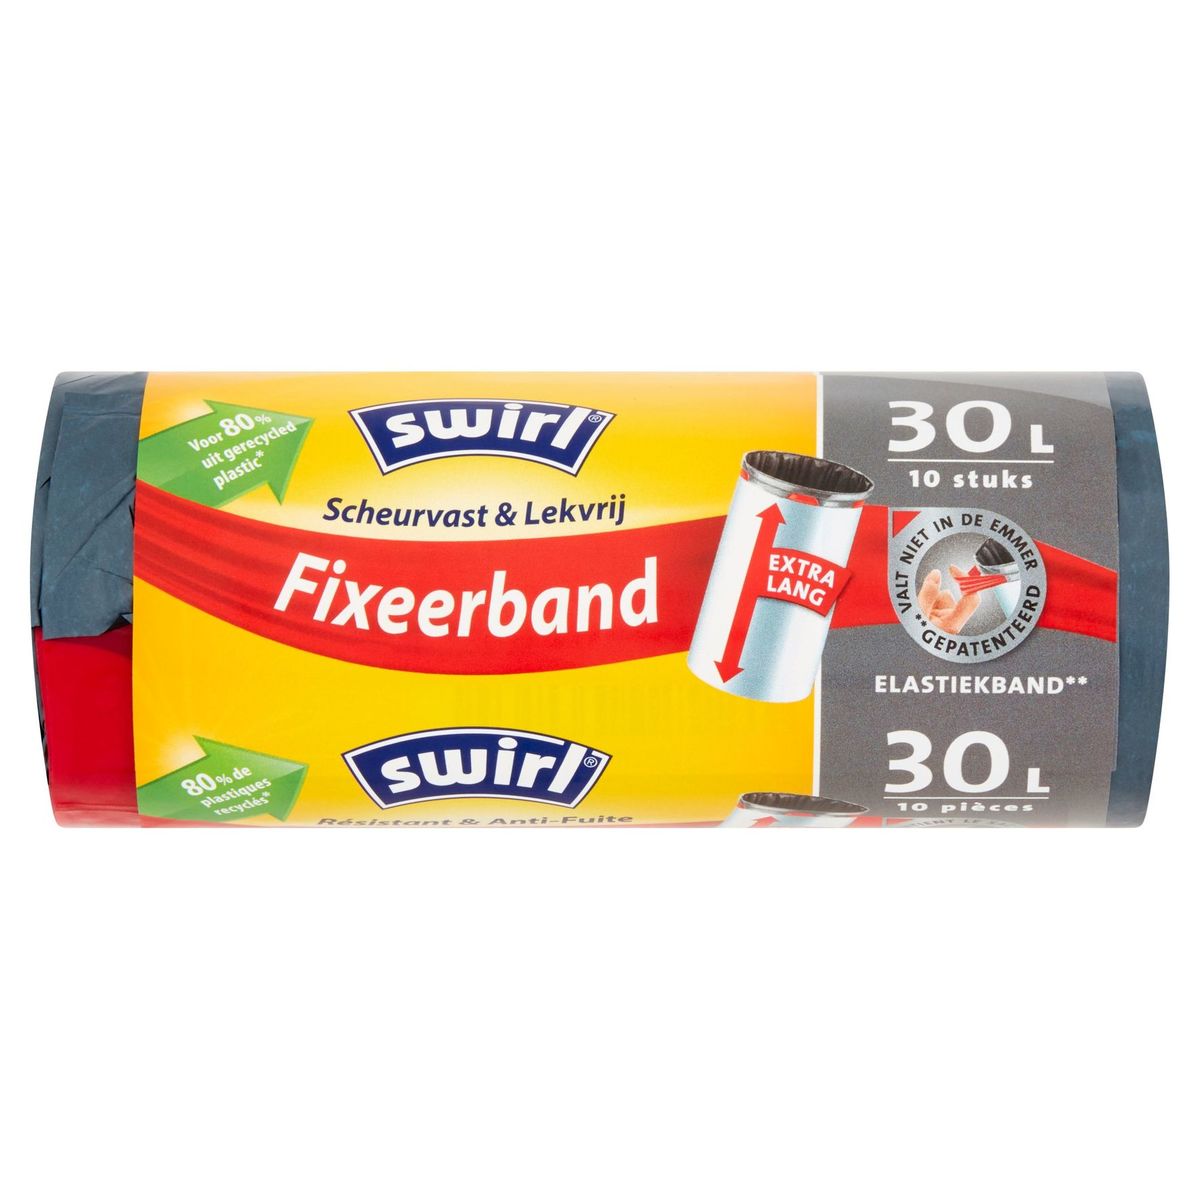 Swirl Fixeerband 30 L 10 Stuks